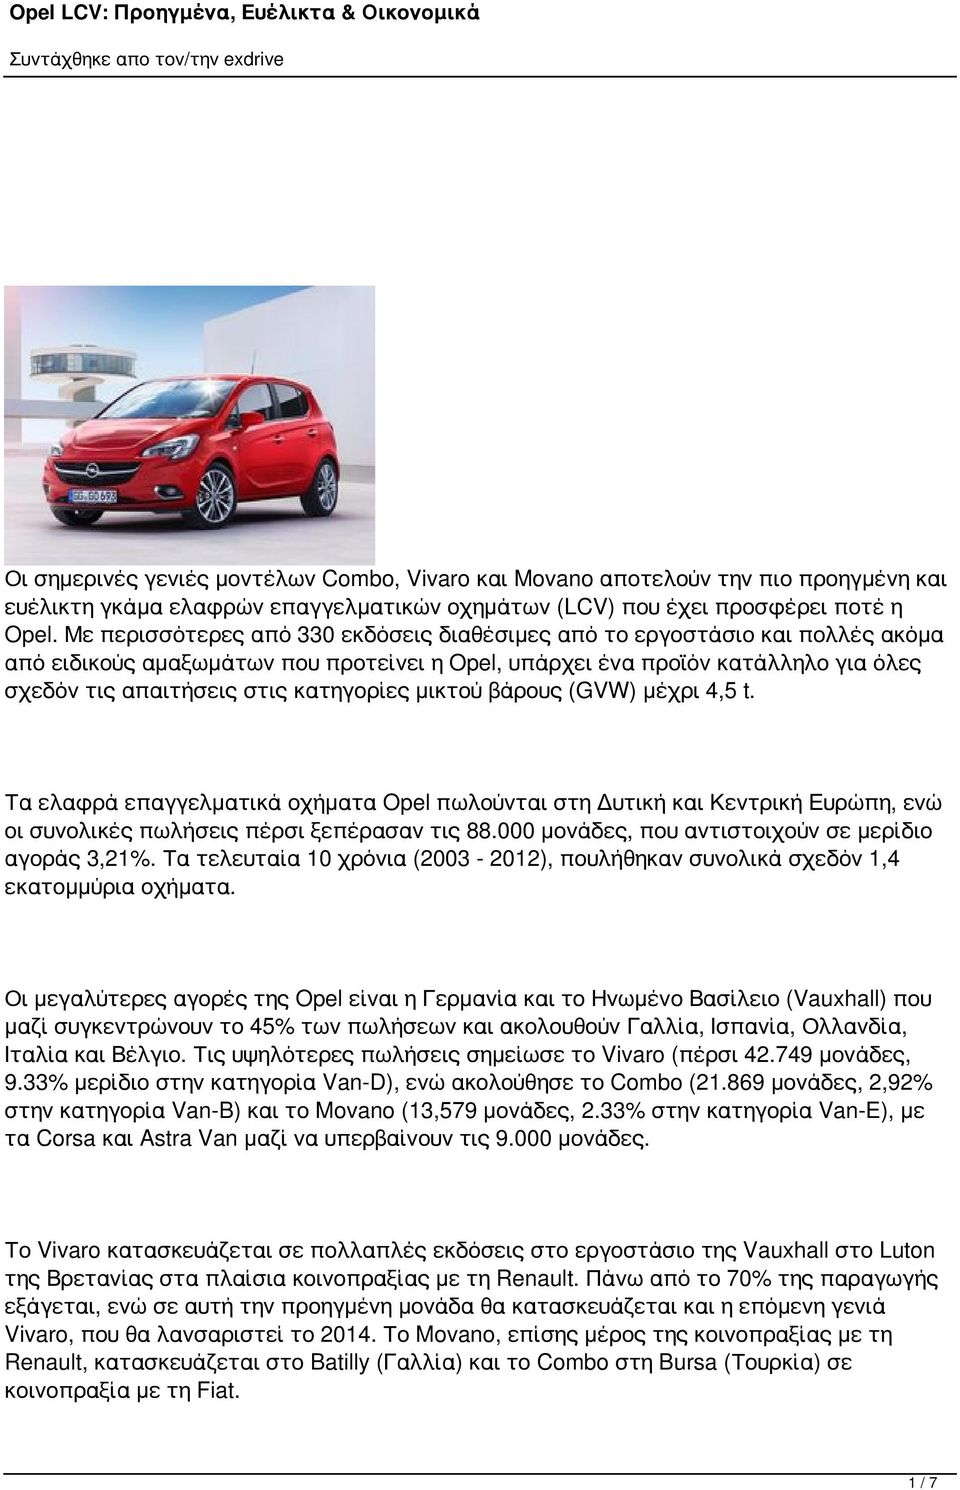 κατηγορίες μικτού βάρους (GVW) μέχρι 4,5 t. Τα ελαφρά επαγγελματικά οχήματα Opel πωλούνται στη Δυτική και Κεντρική Ευρώπη, ενώ οι συνολικές πωλήσεις πέρσι ξεπέρασαν τις 88.